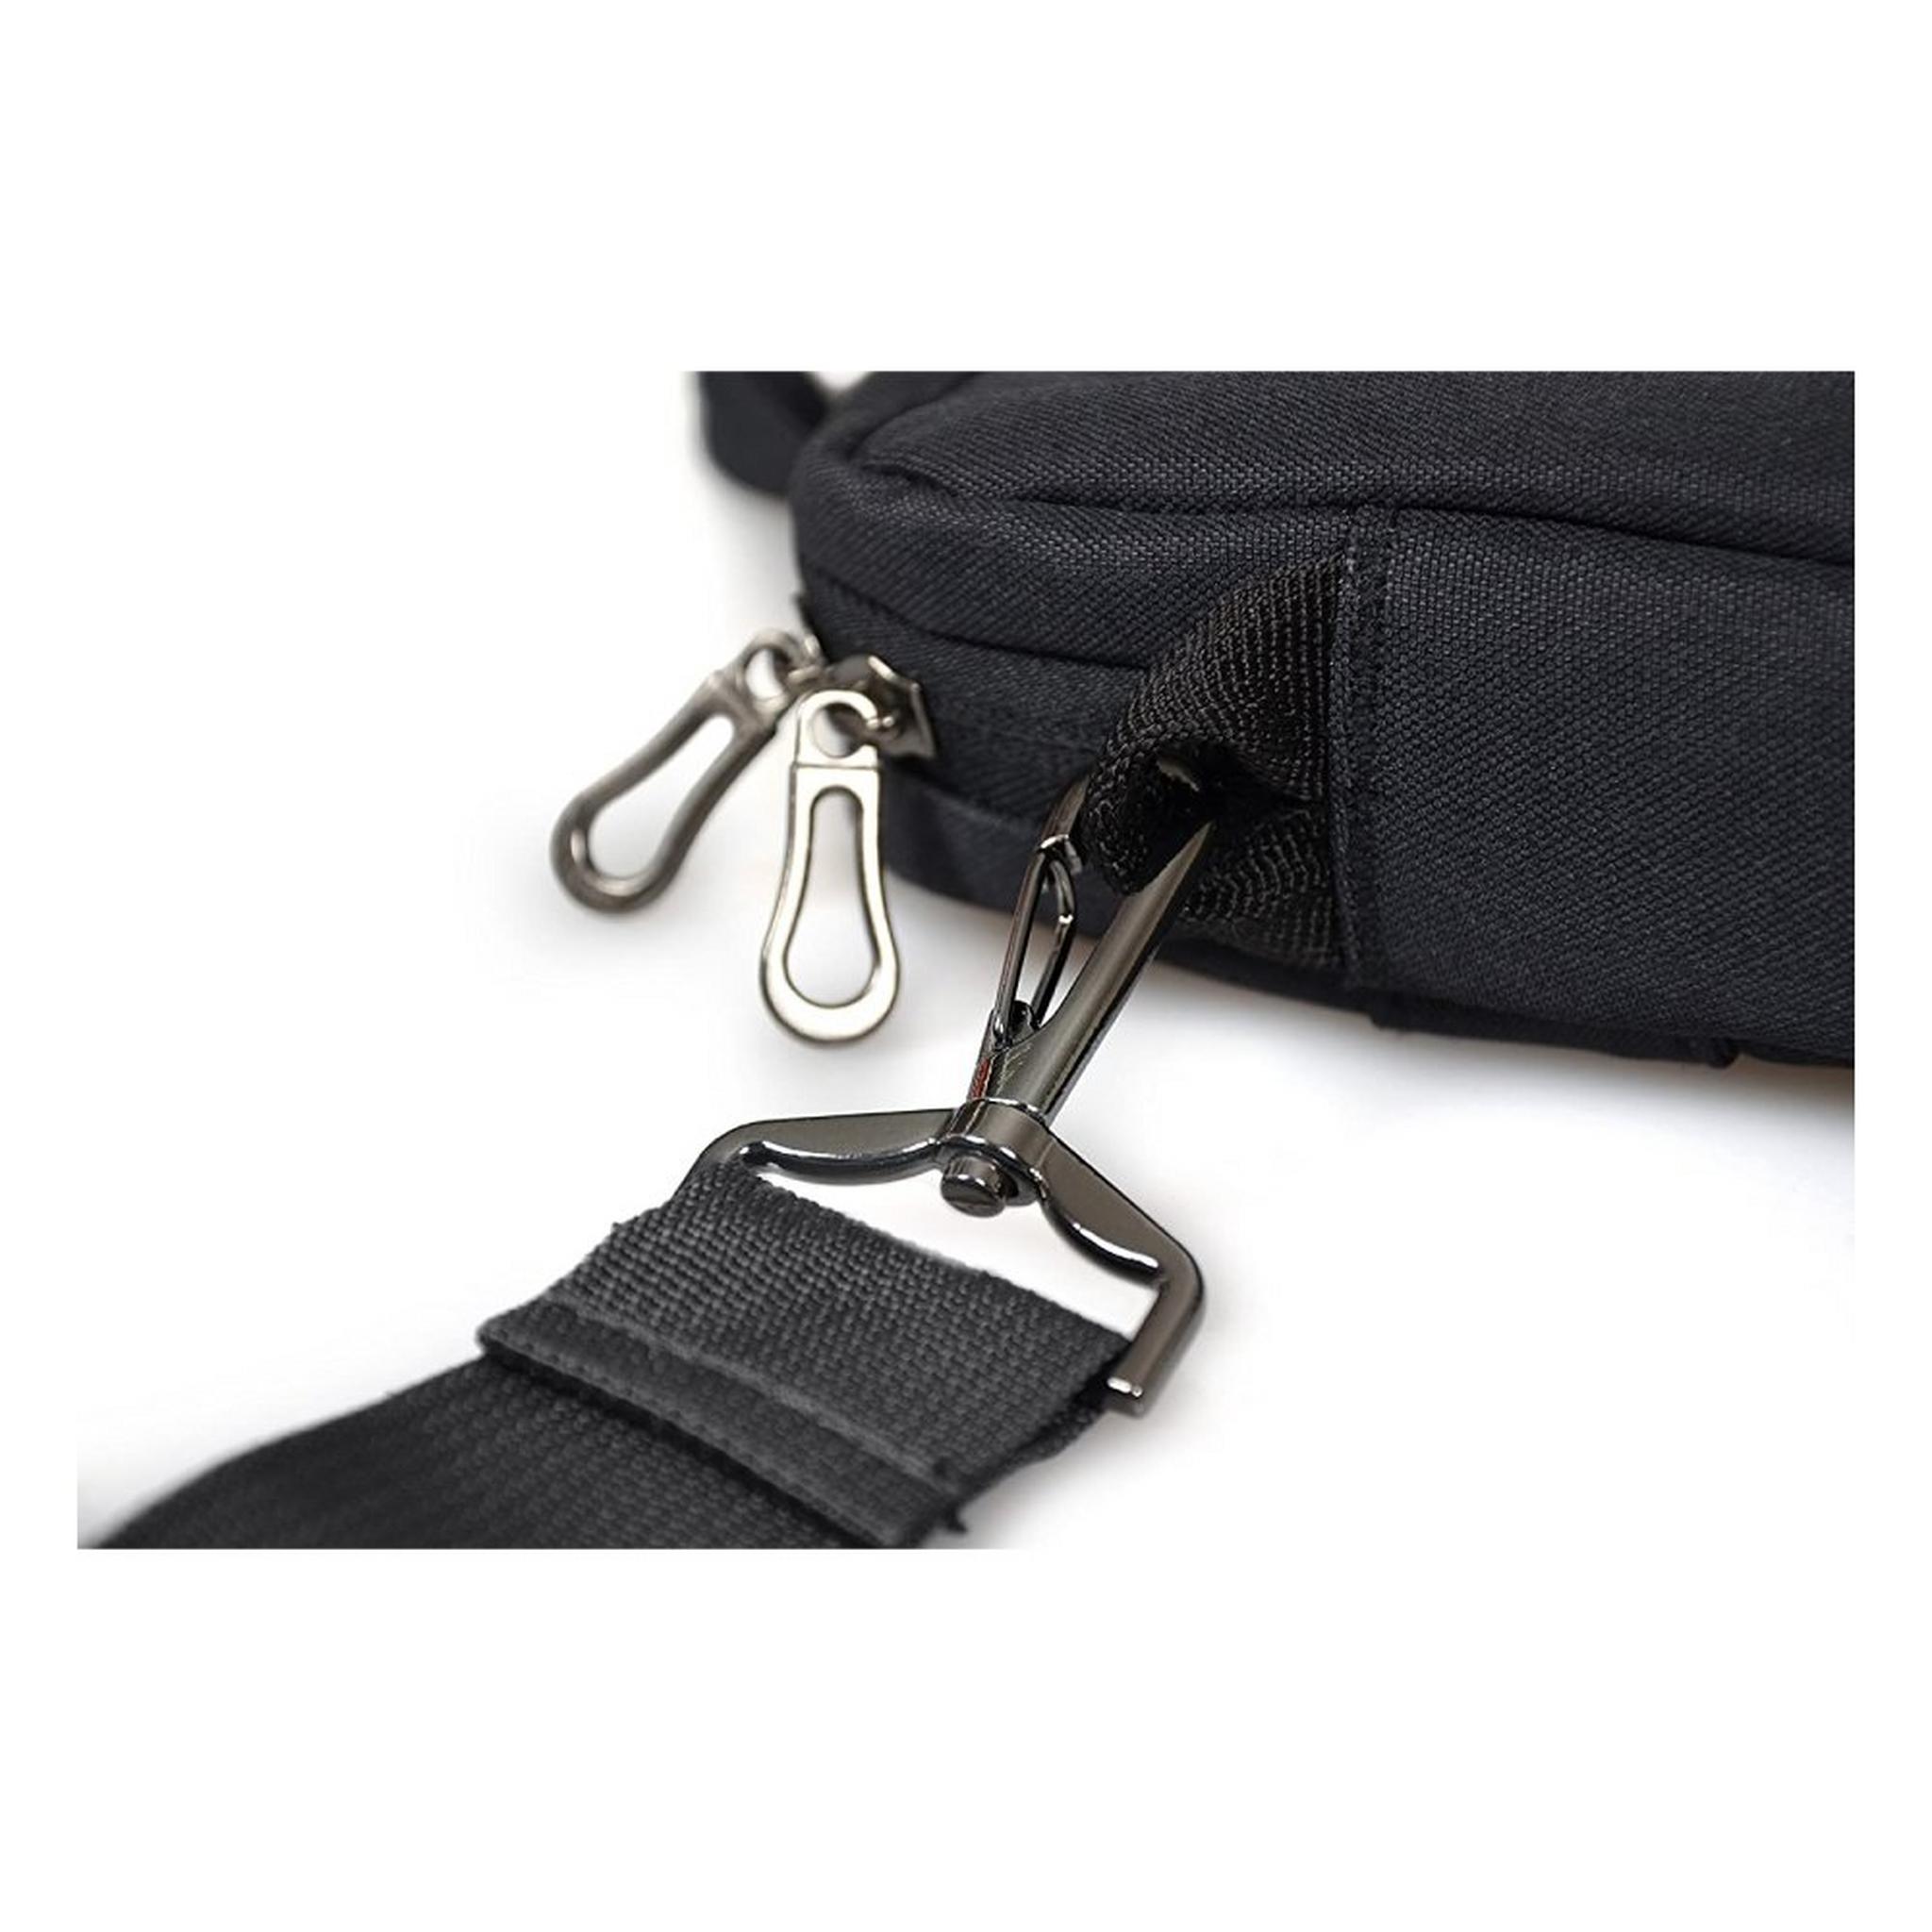 حقيبة لابتوب محمول من بورت ديزاينز مقاس 15.6 بوصة | أسود